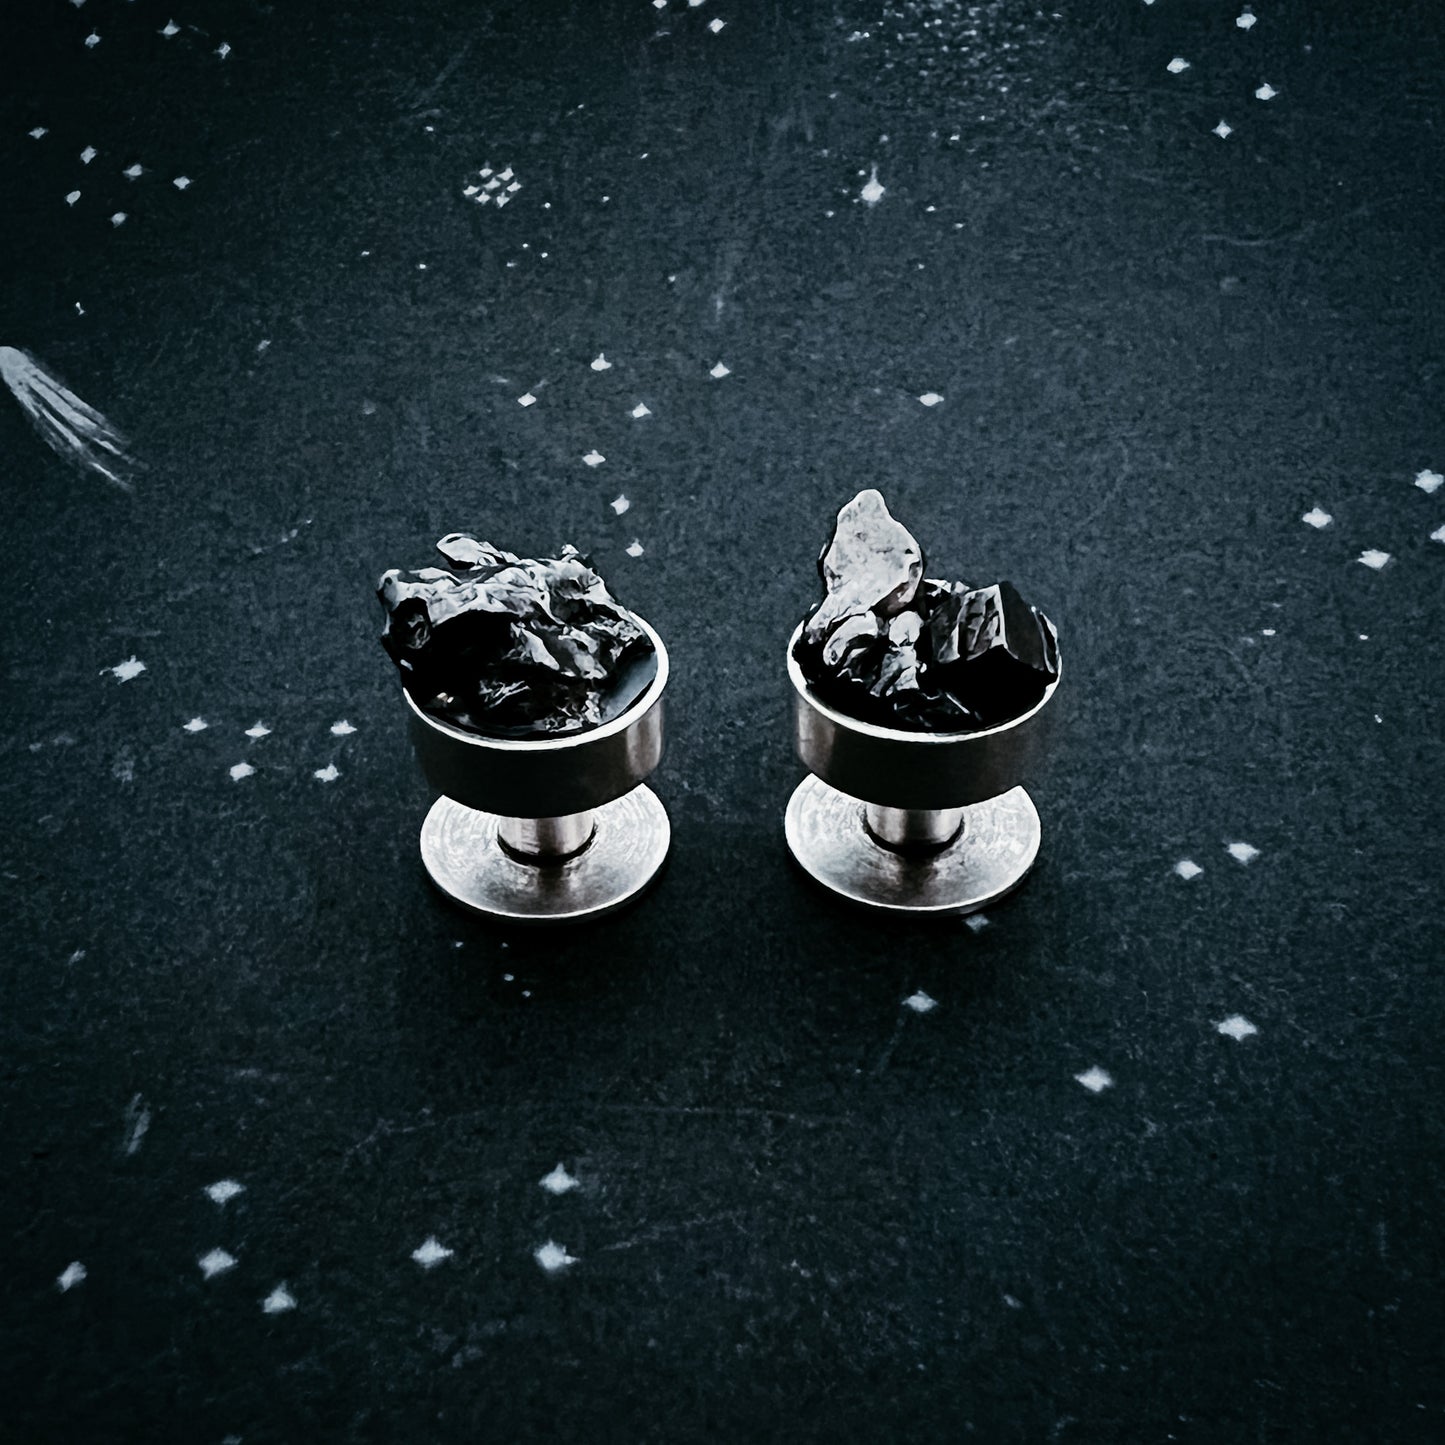 Cufflinks with Authentic Meteorite Cufflinks Yugen Handmade   